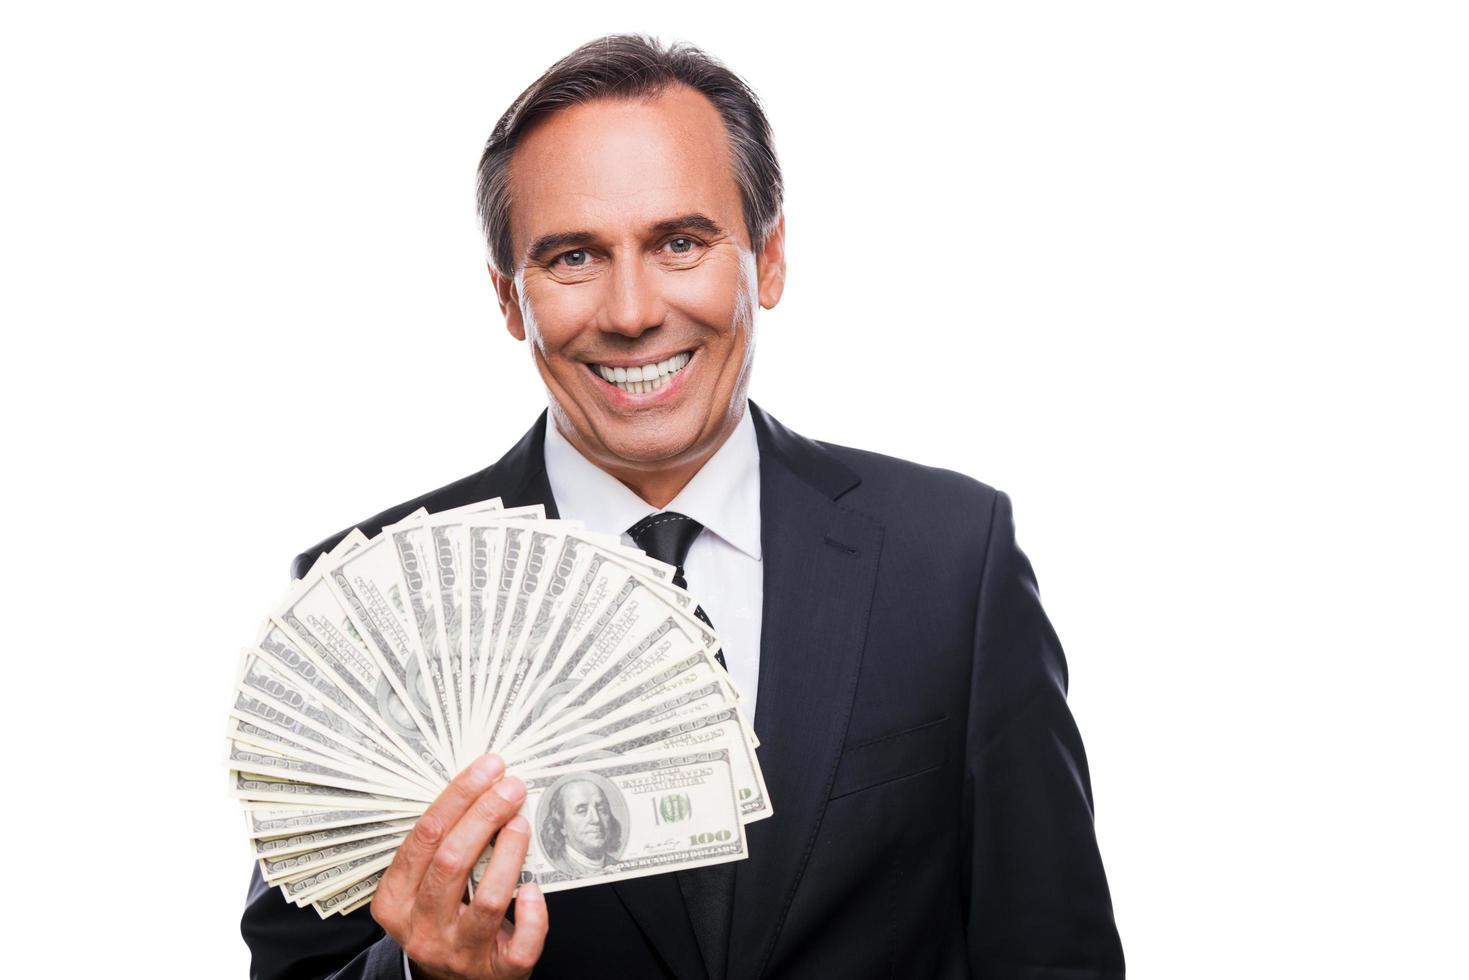 dinheiro é um poder. retrato de homem maduro confiante em trajes formais segurando dinheiro e sorrindo em pé contra um fundo branco foto